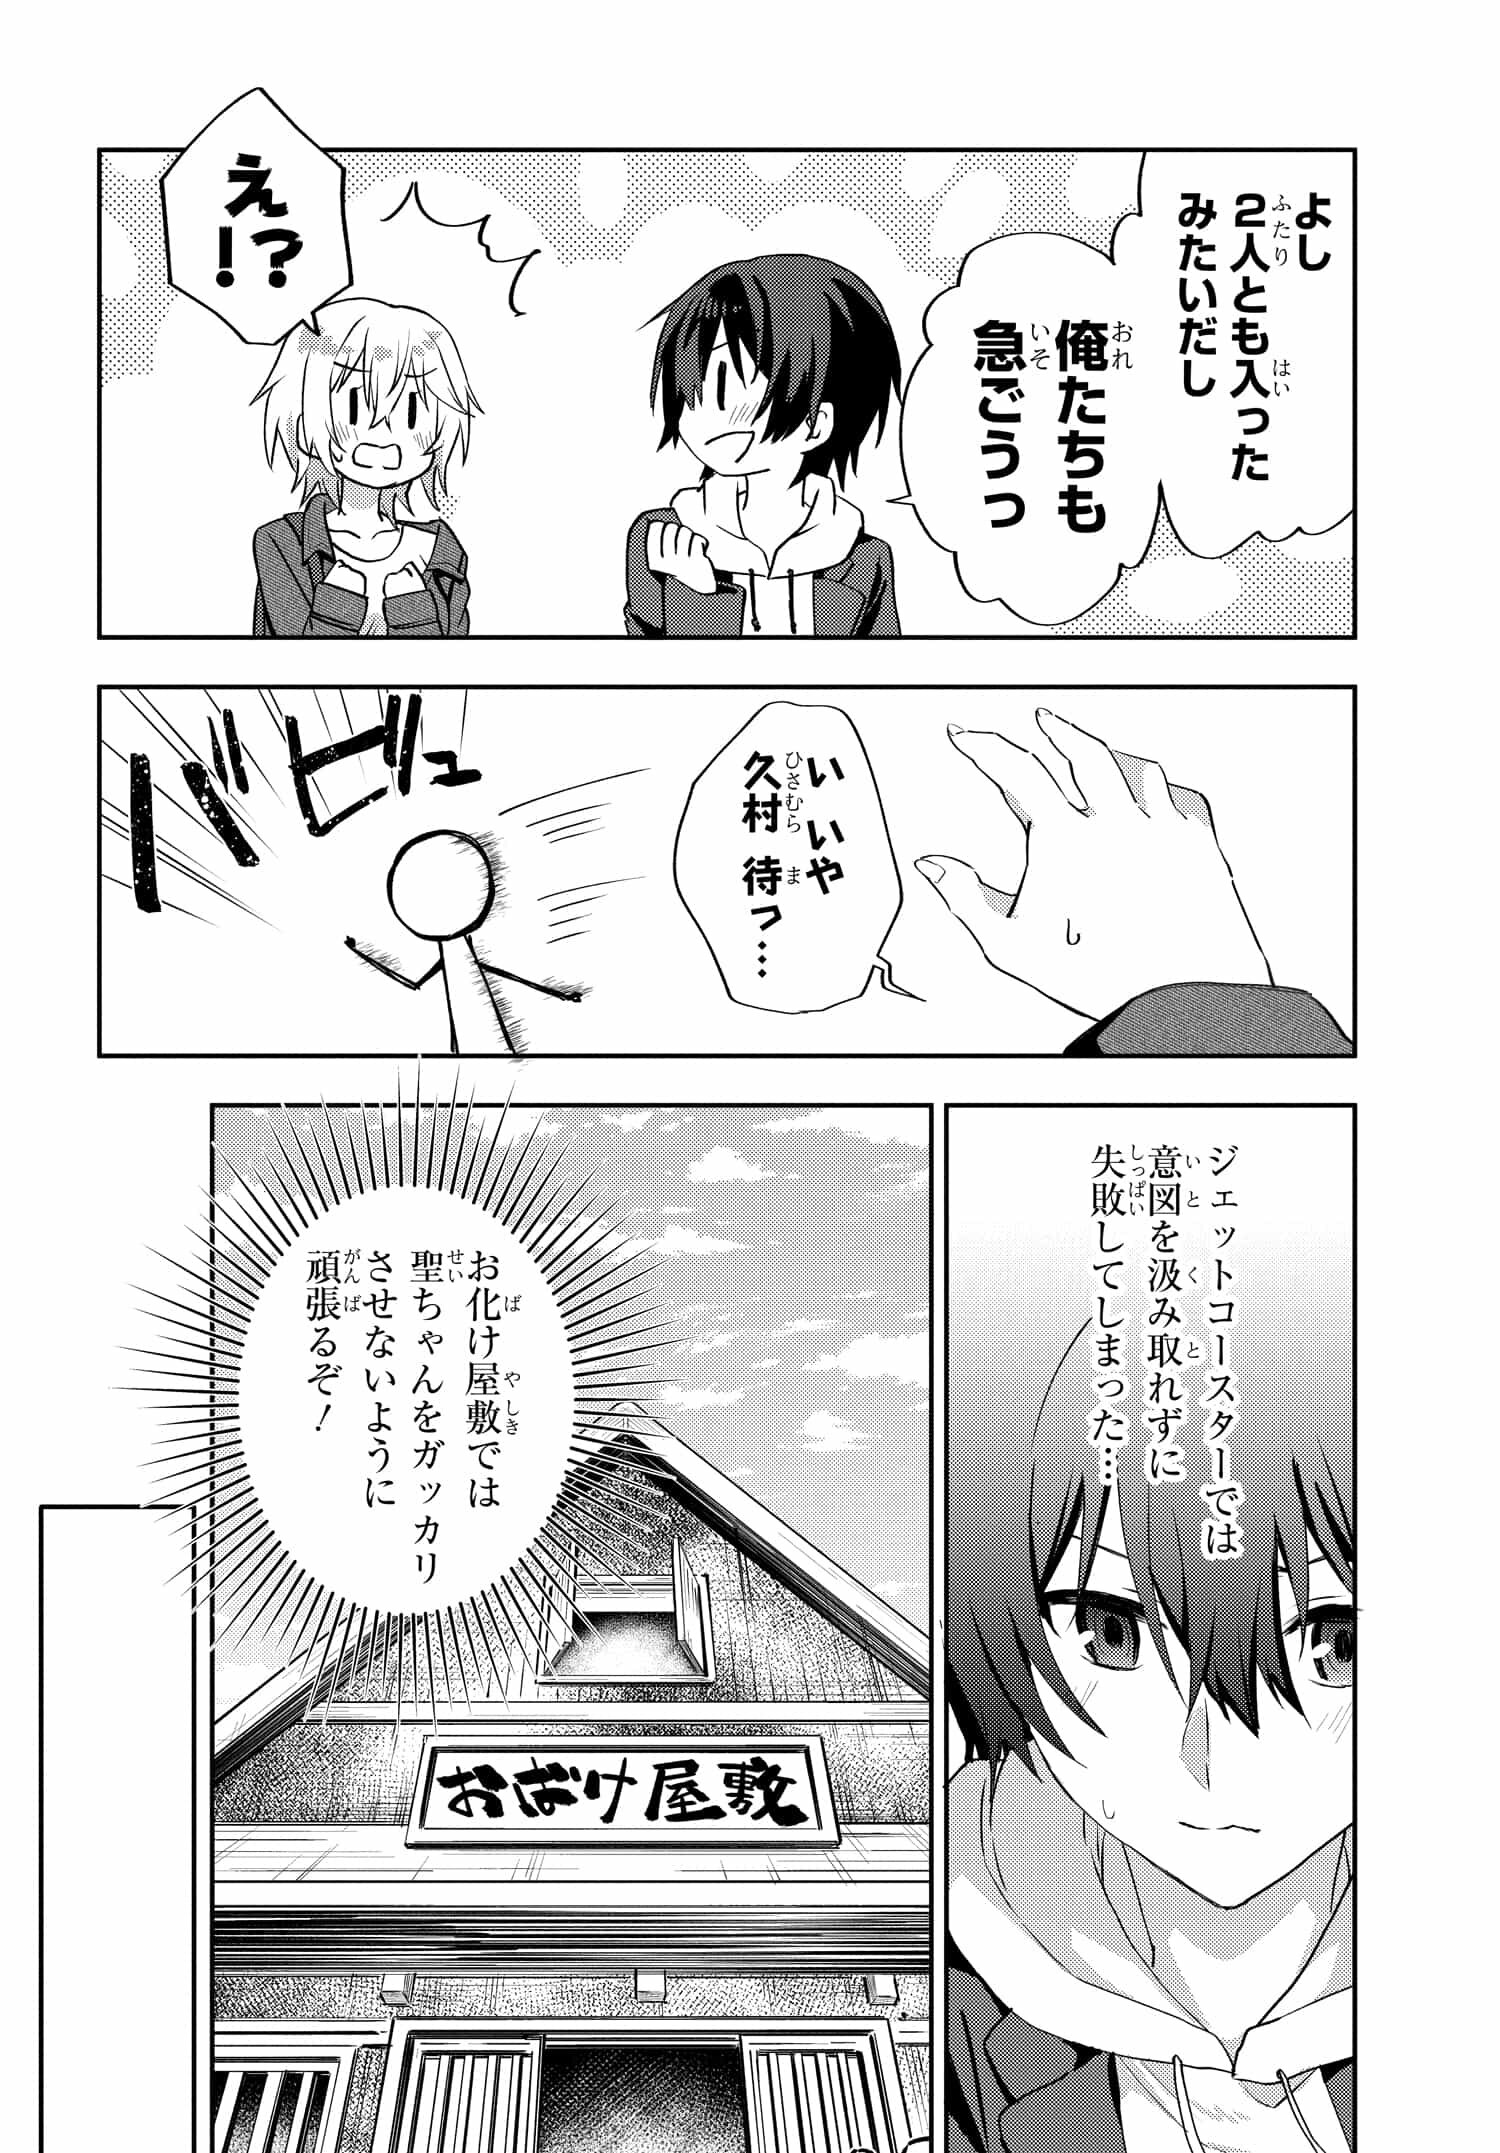 Romcom Manga ni Haitte Shimatta no de, Oshi no Make Heroine wo Zenryoku de Shiawase ni suru - Chapter 7.2 - Page 5